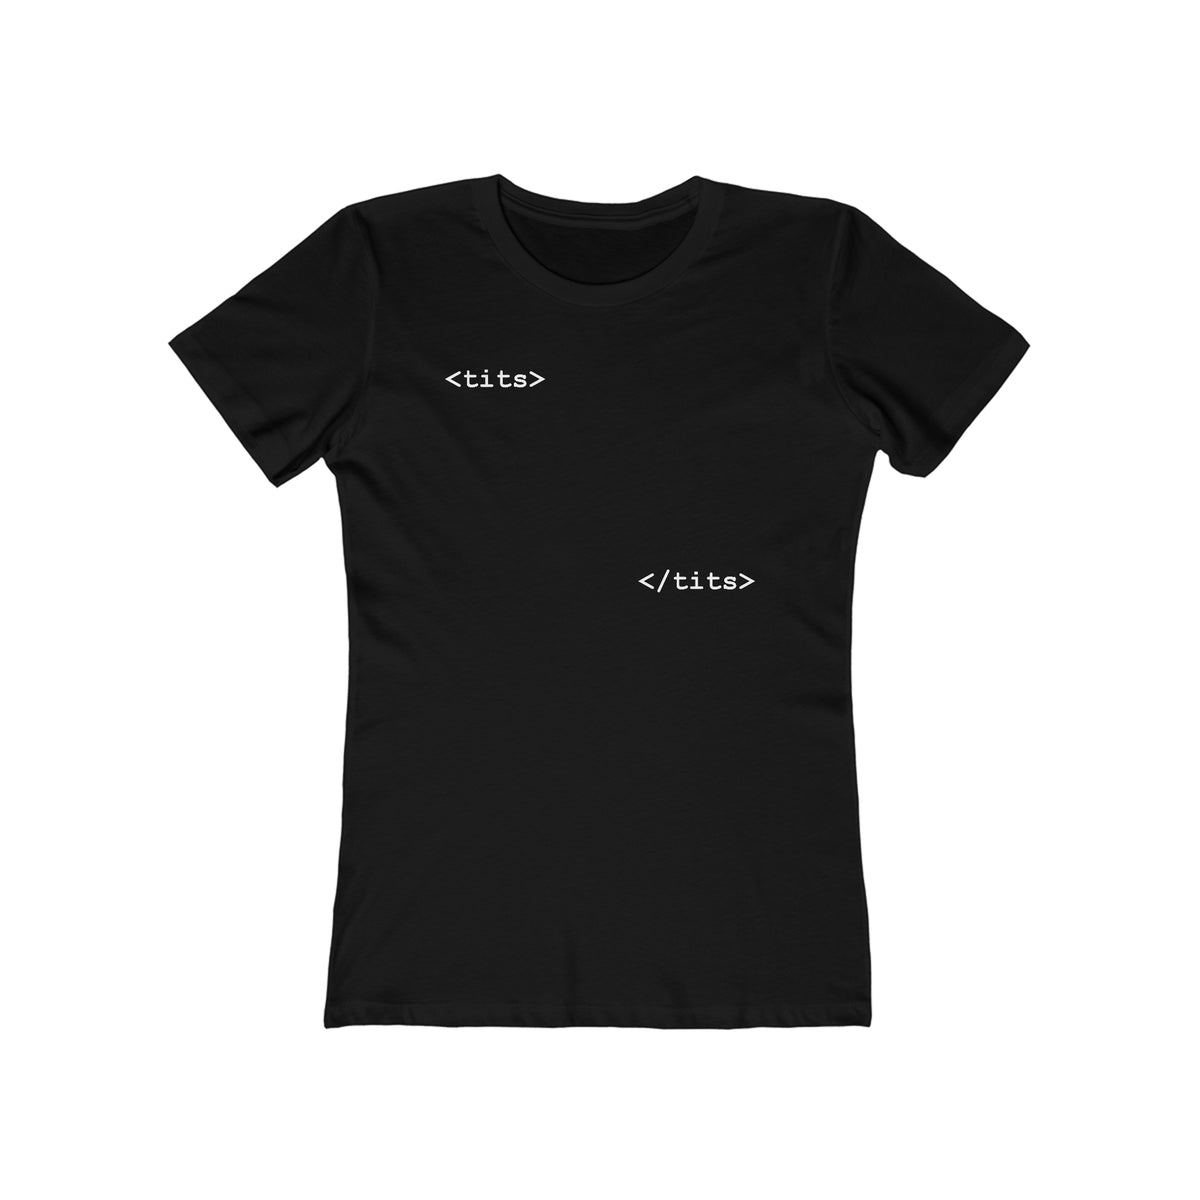 Tits - Html - Women’s T-Shirt